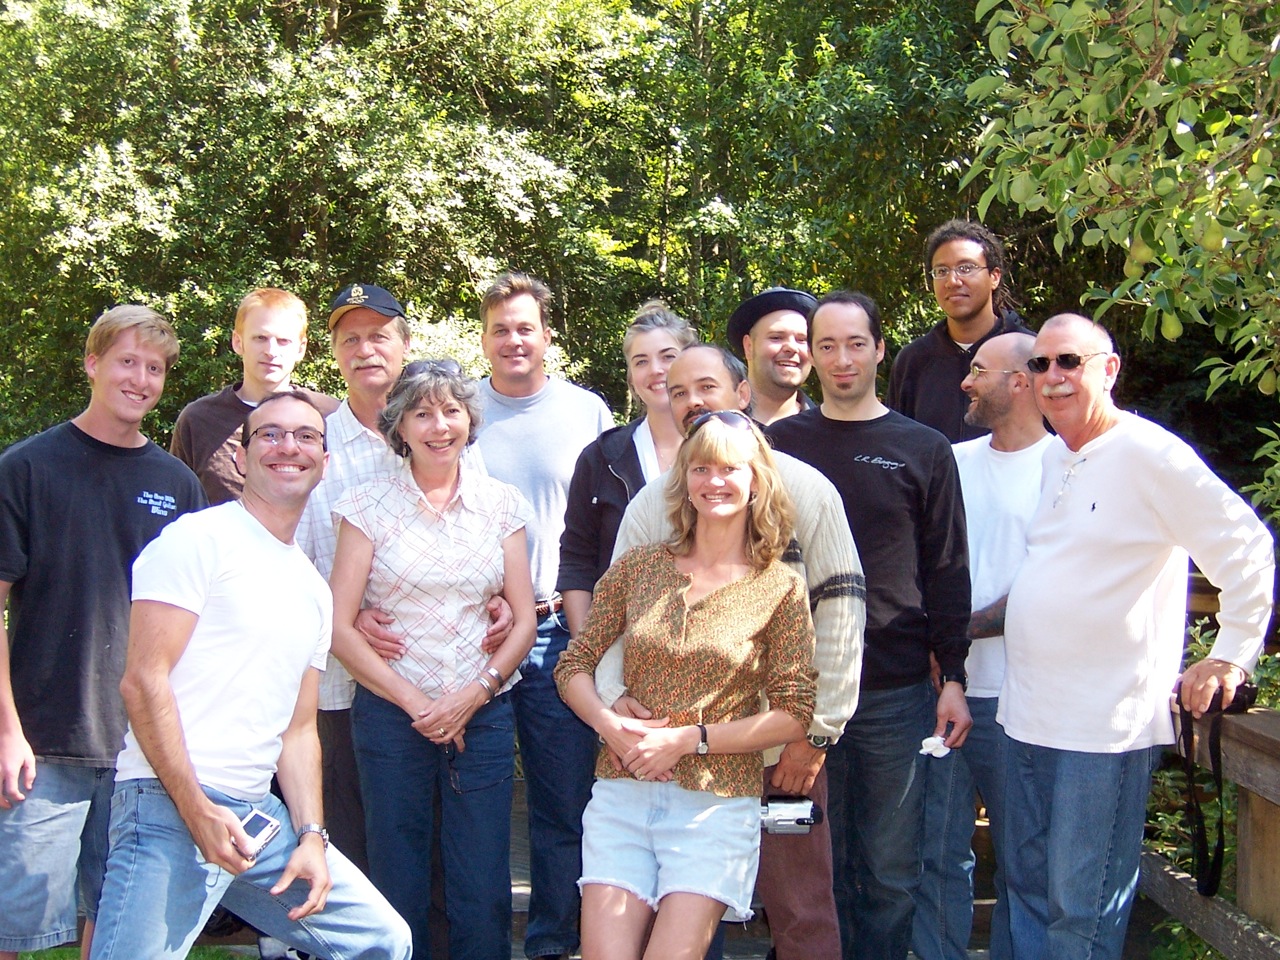 Workshop Attendees in 2013